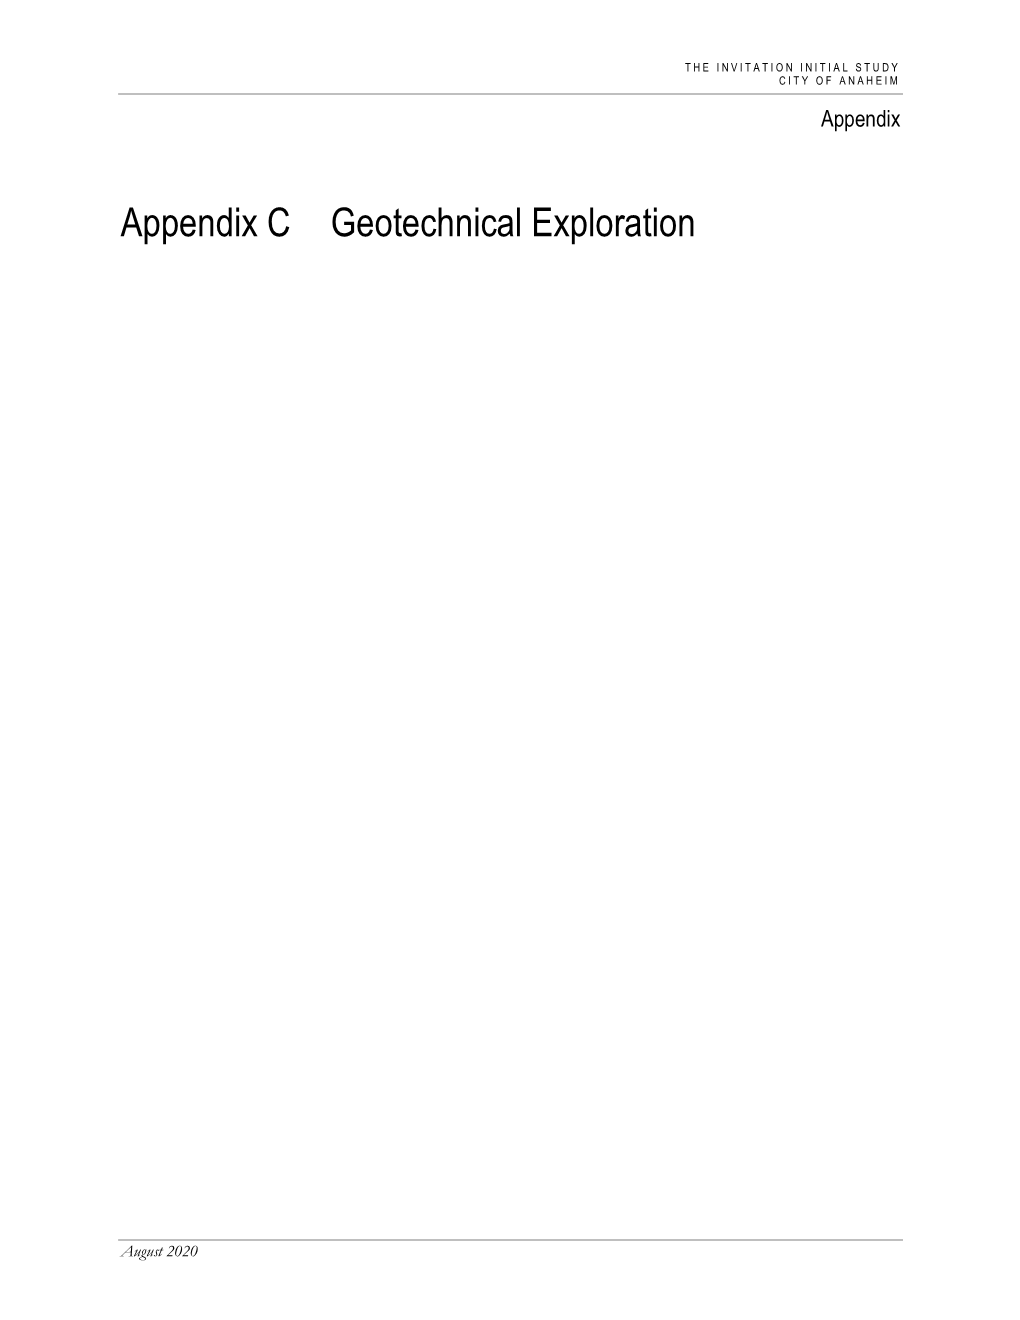 Appendix C Geotechnical Exploration